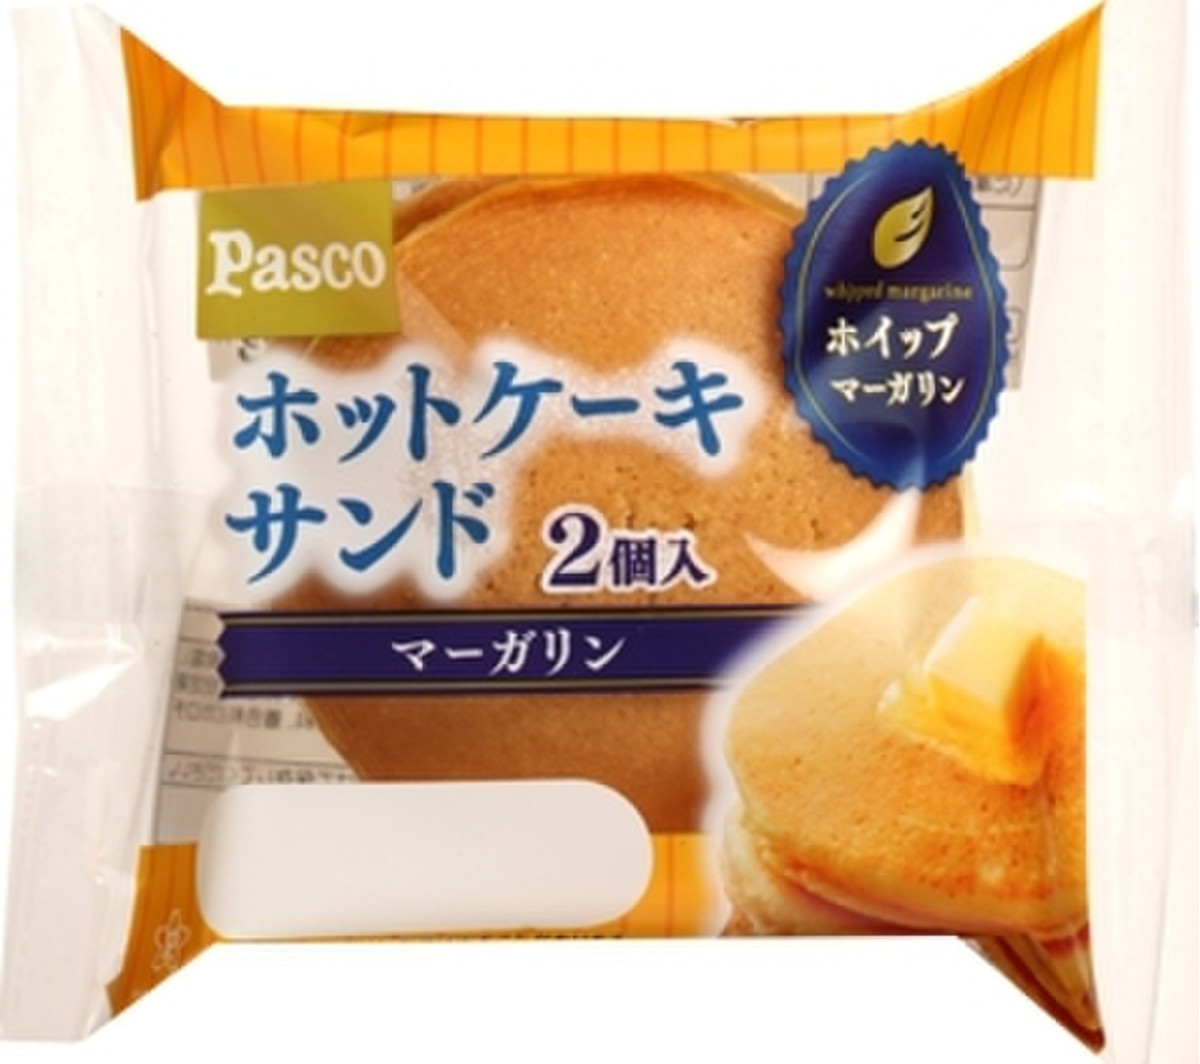 高評価 Pasco ホットケーキサンド マーガリン 袋2個のクチコミ 評価 カロリー情報 もぐナビ